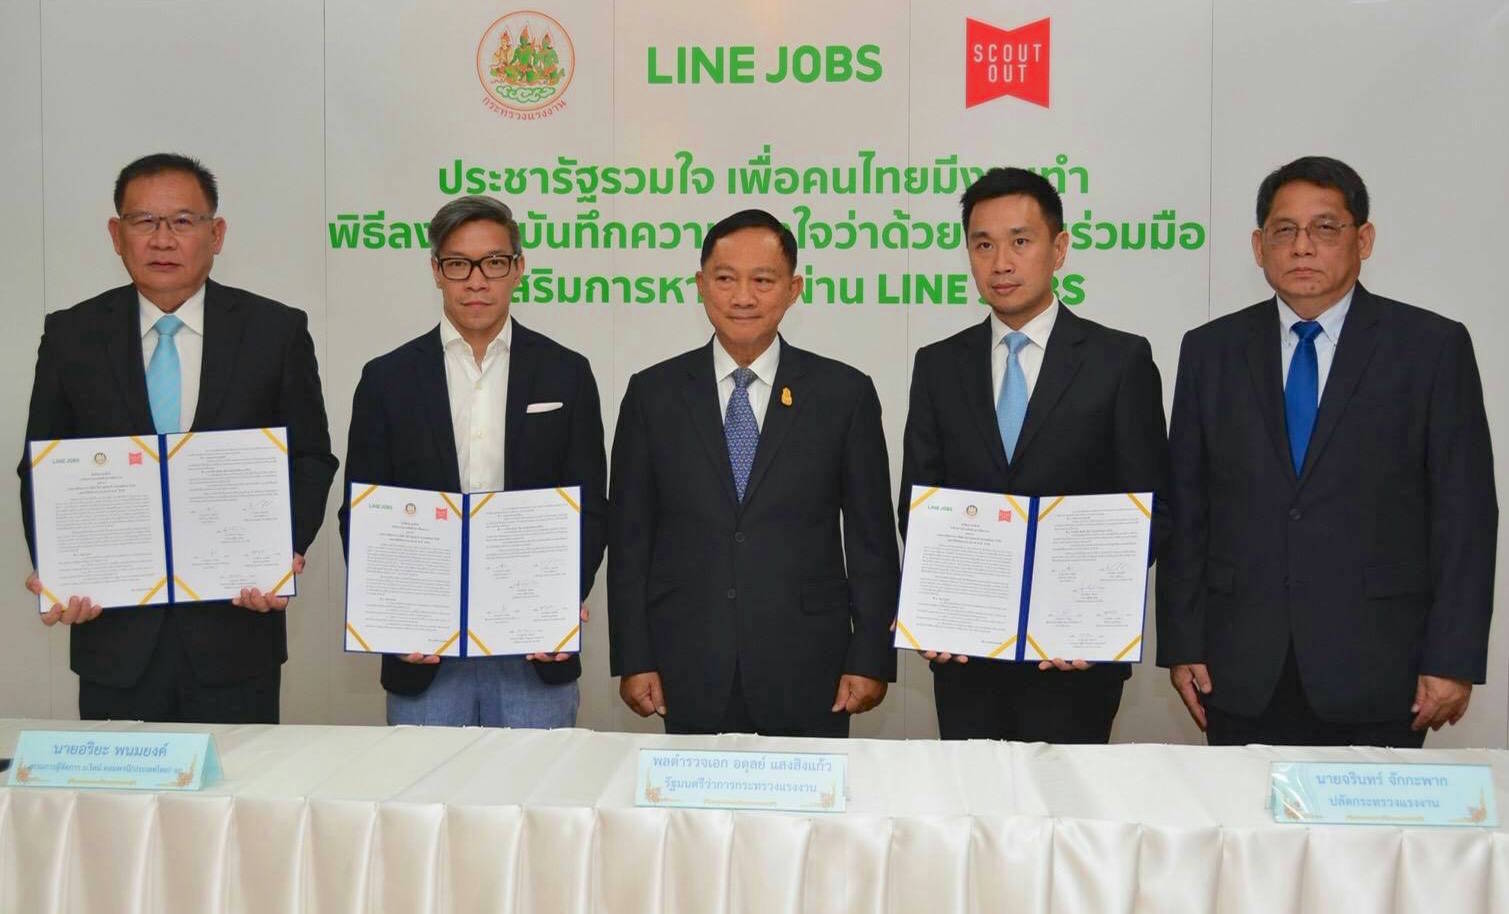 “LINE JOBS ร่วมมือ กระทรวงแรงงาน” เน้นช่วยเหลือคนไทยหางานผ่าน LINE JOBS